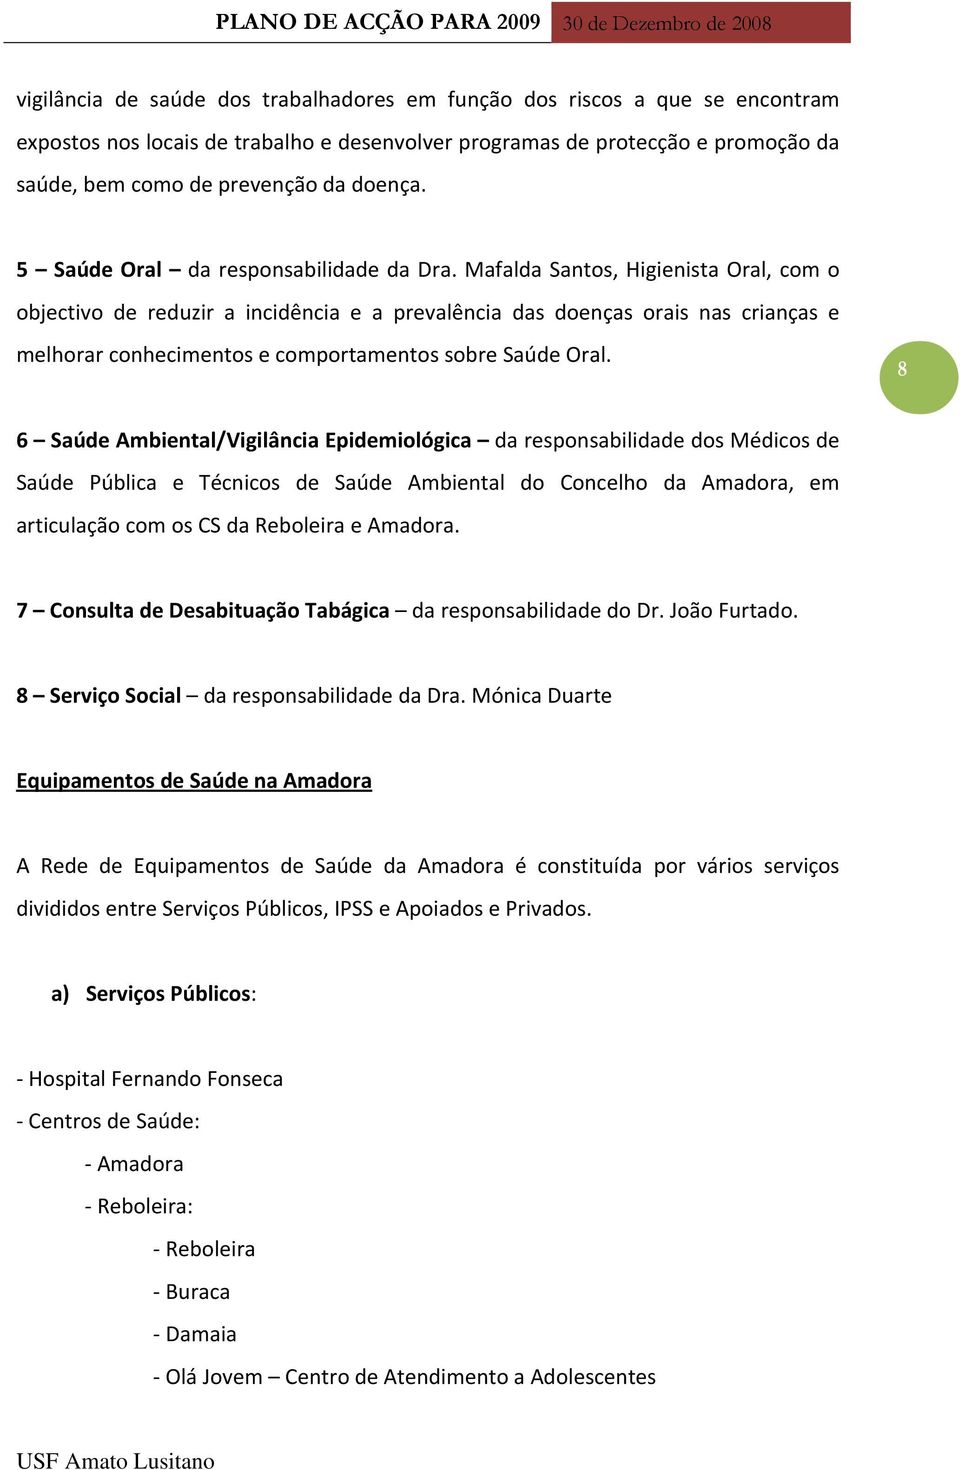 Mafalda Santos, Higienista Oral, com o objectivo de reduzir a incidência e a prevalência das doenças orais nas crianças e melhorar conhecimentos e comportamentos sobre Saúde Oral.